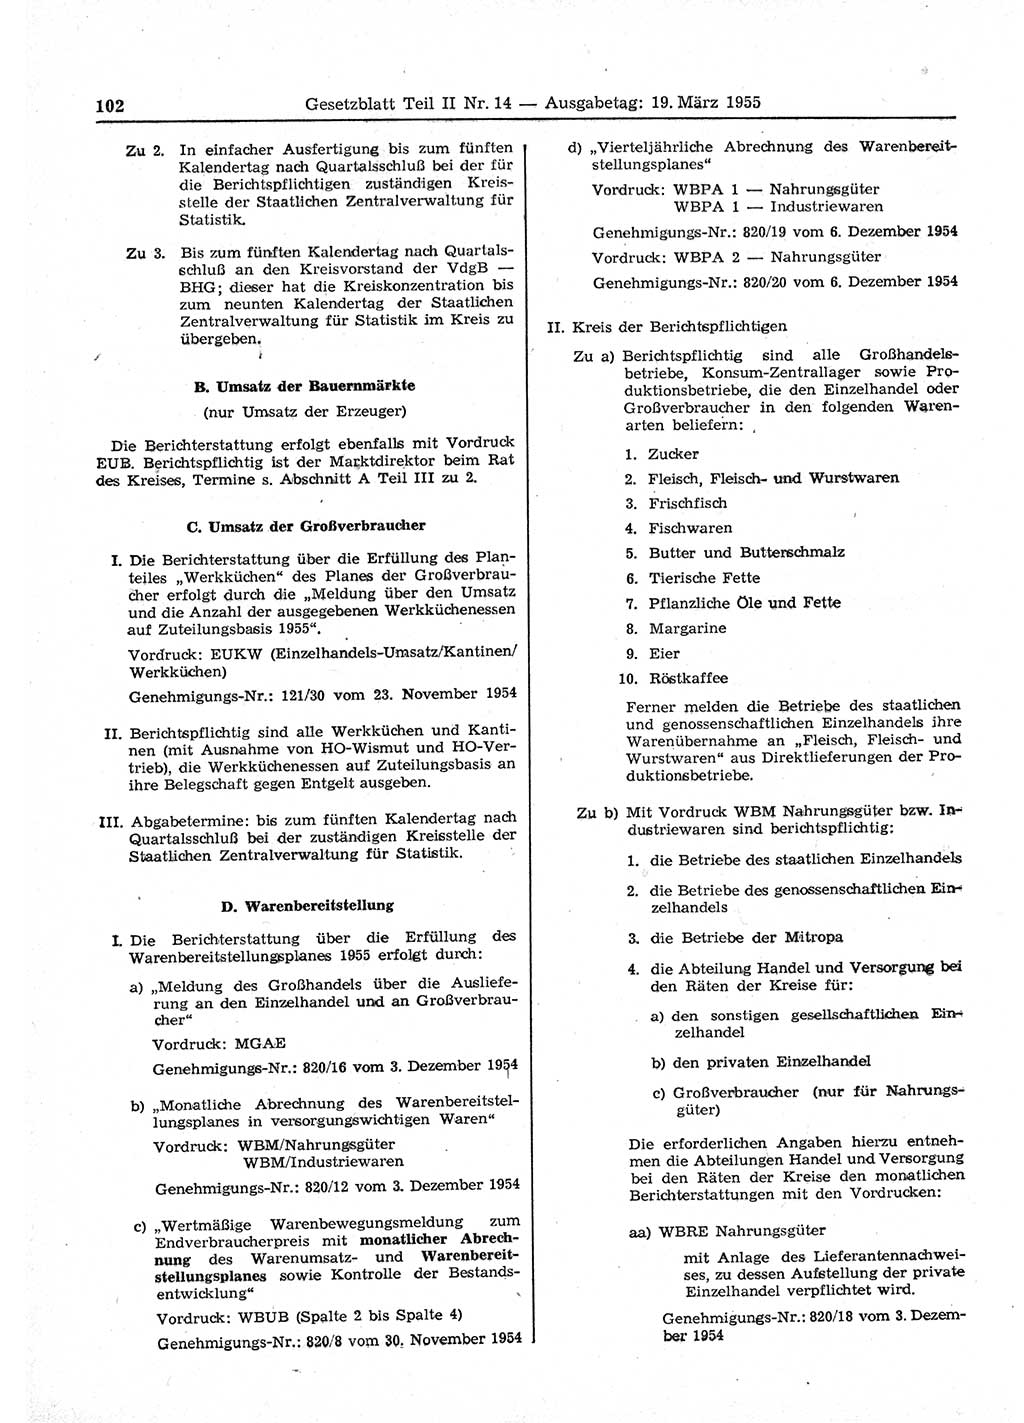 Gesetzblatt (GBl.) der Deutschen Demokratischen Republik (DDR) Teil ⅠⅠ 1955, Seite 102 (GBl. DDR ⅠⅠ 1955, S. 102)